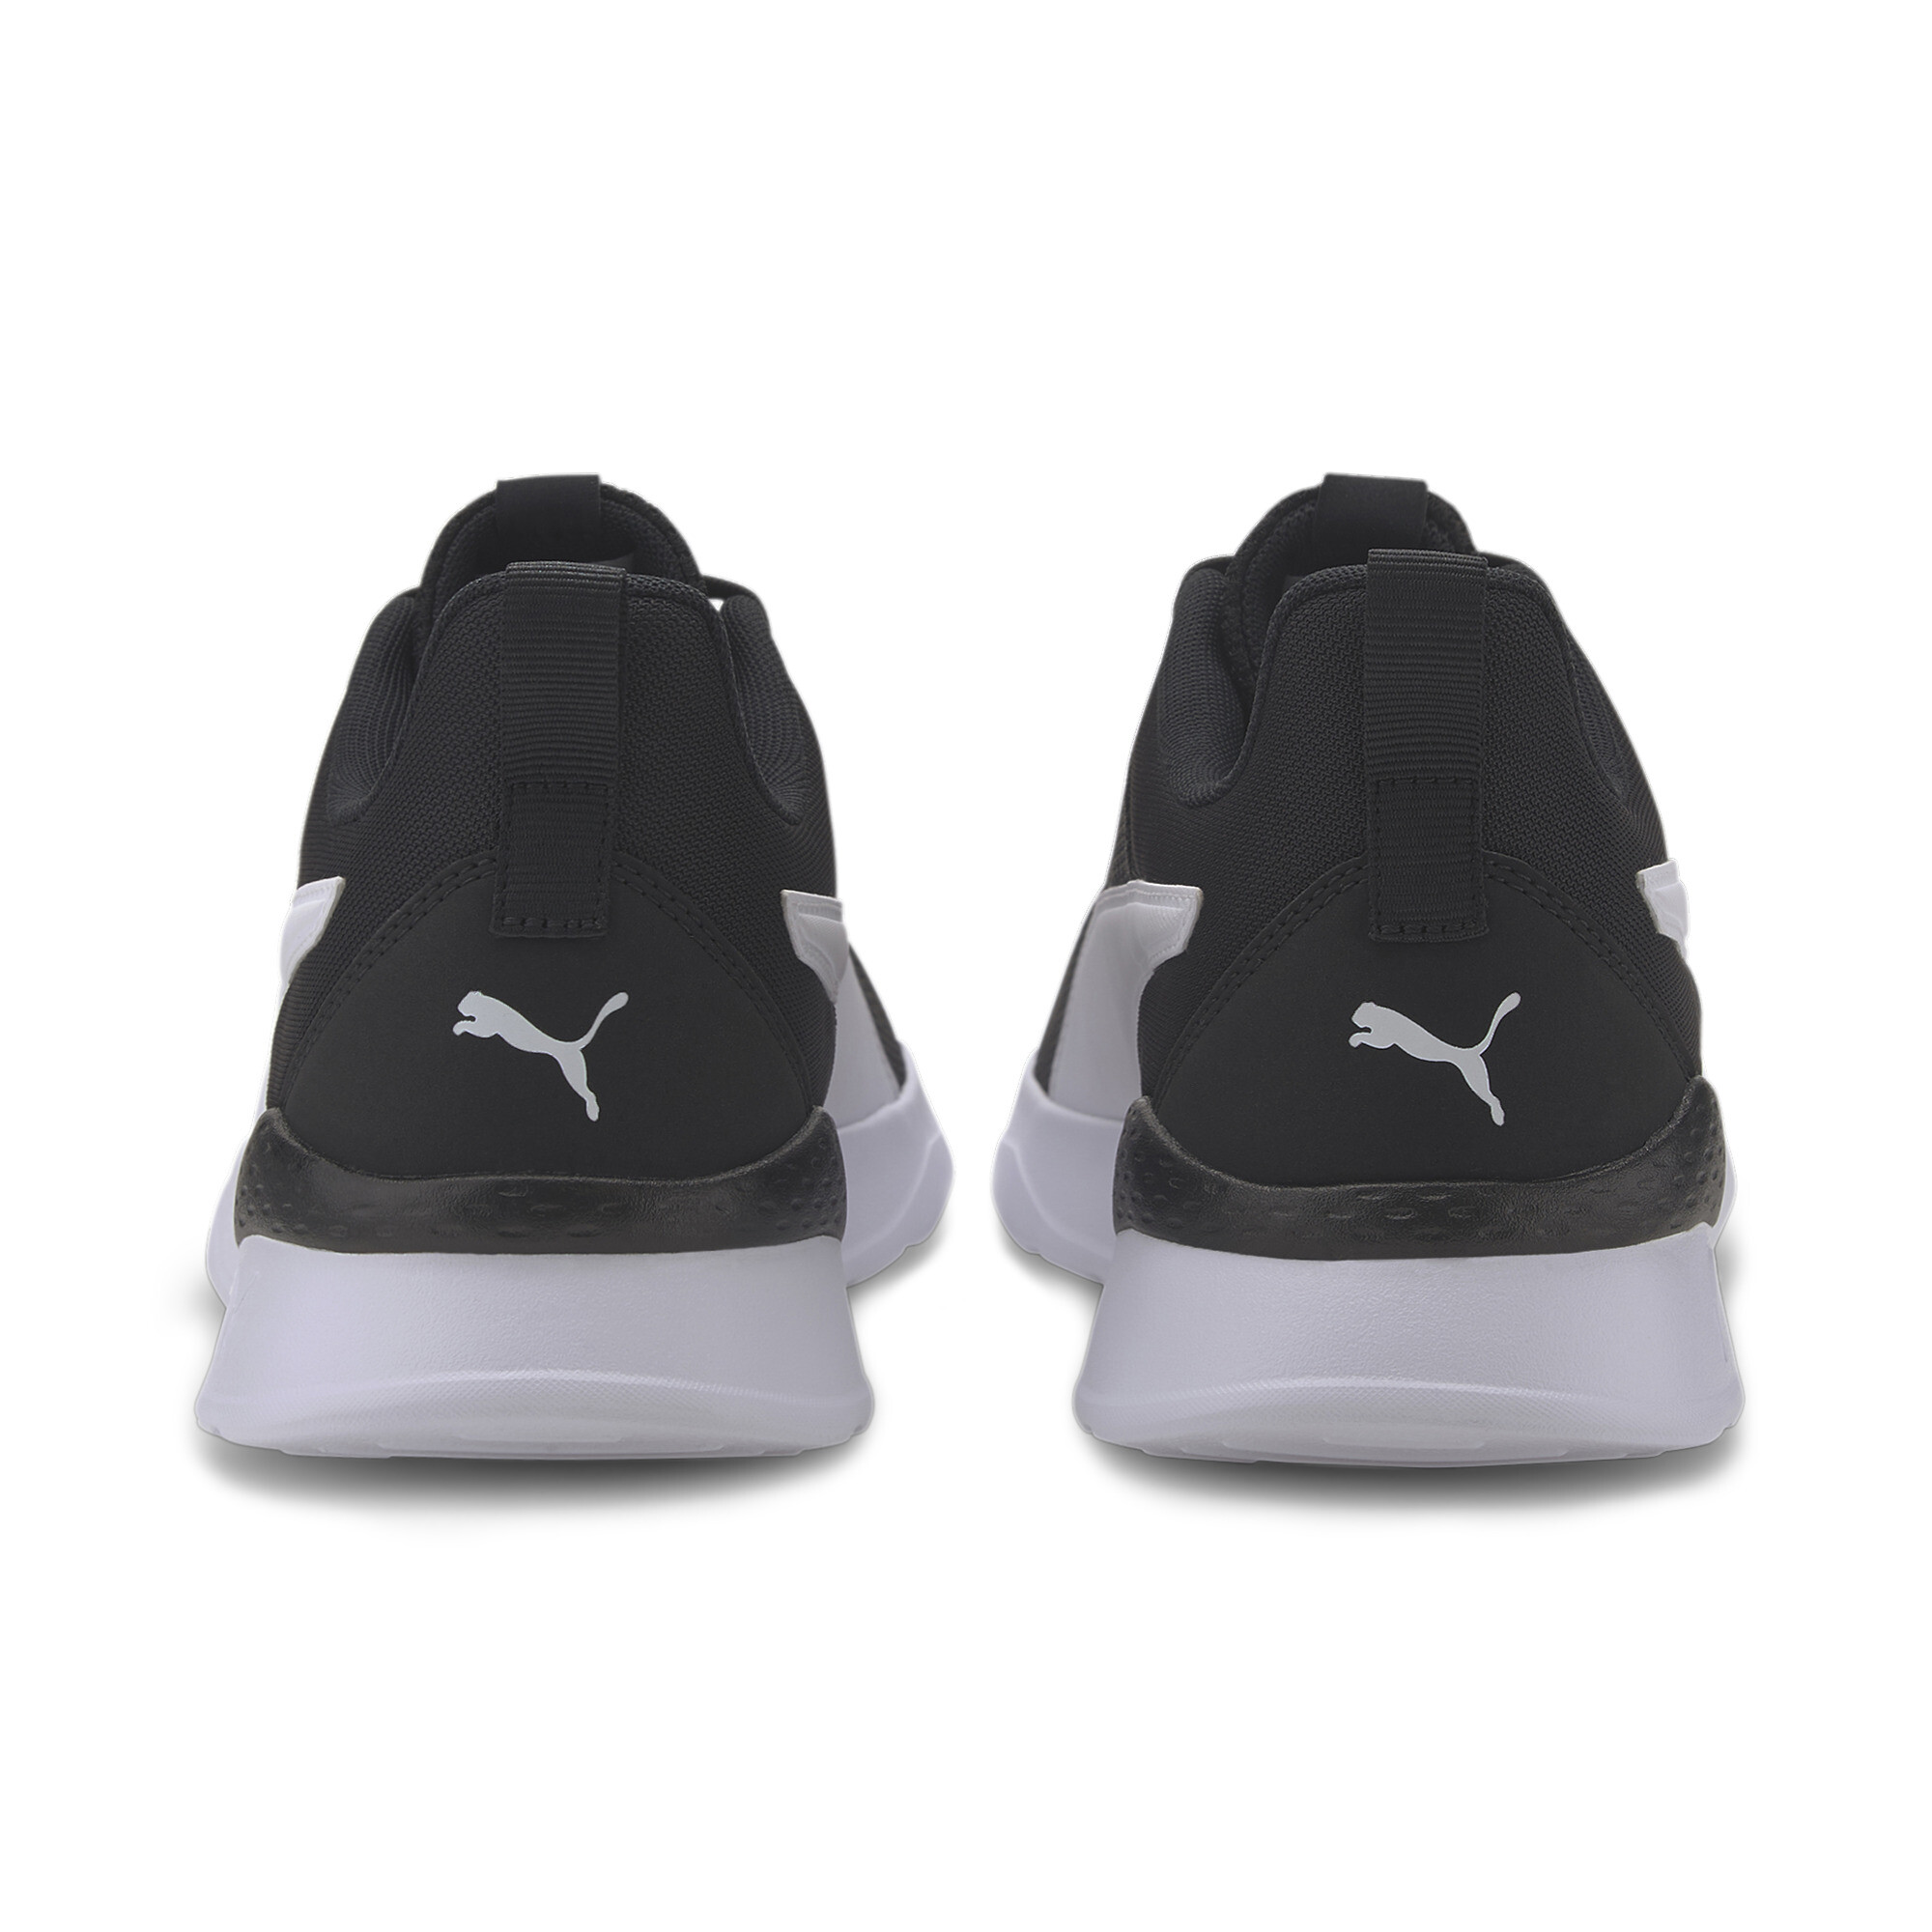 Men's PUMA Anzarun Lite Trainers Shoes In Black, Size EU 44.5